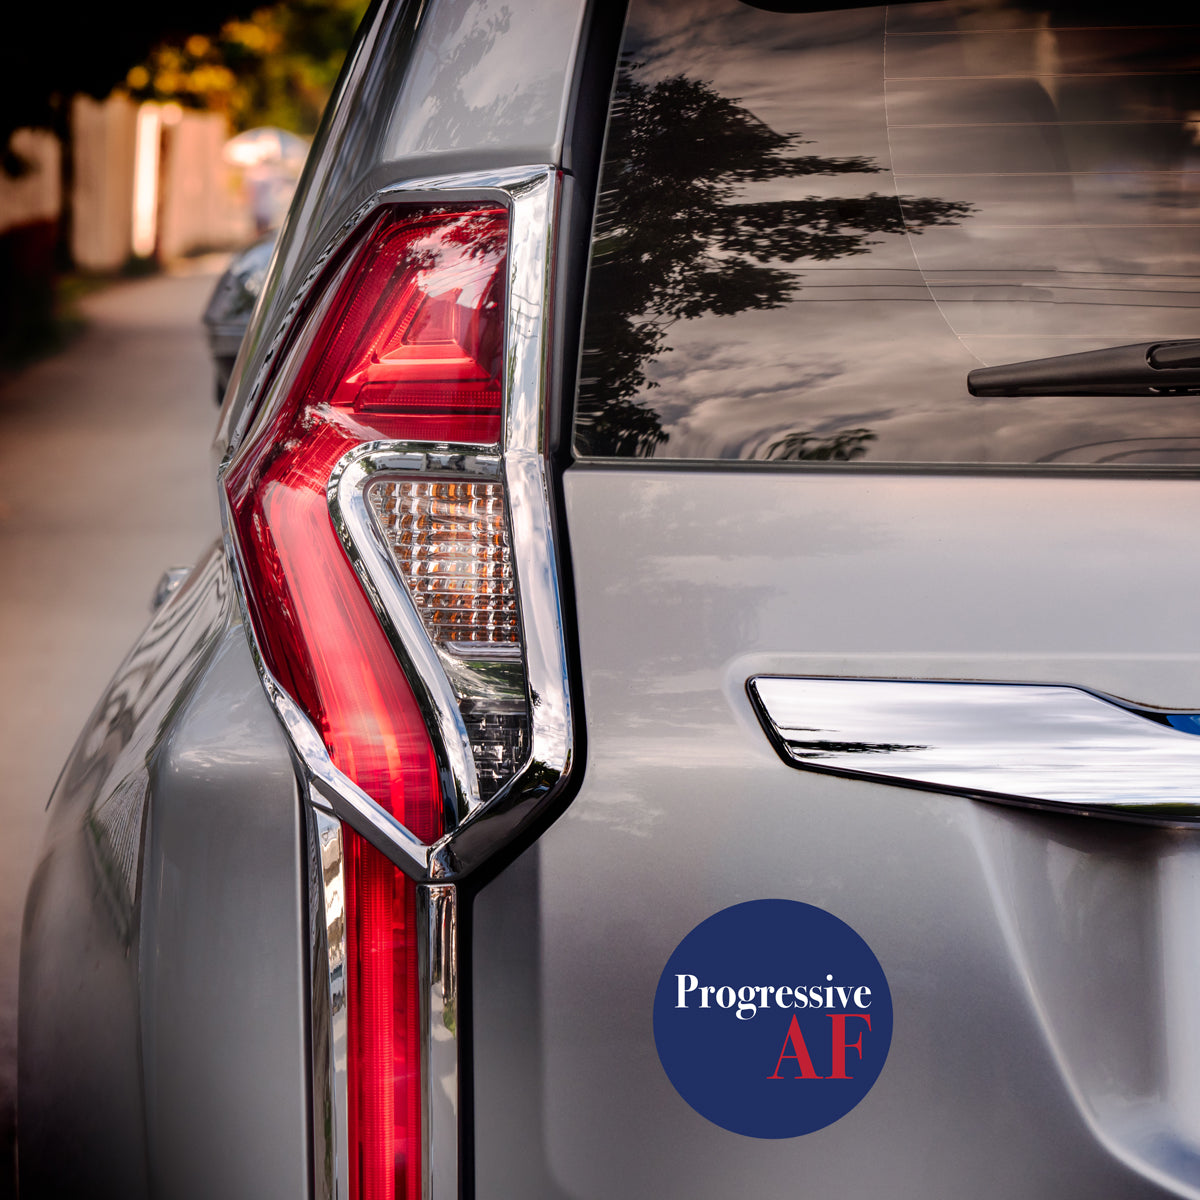 progressive af car magnet on a vehicle